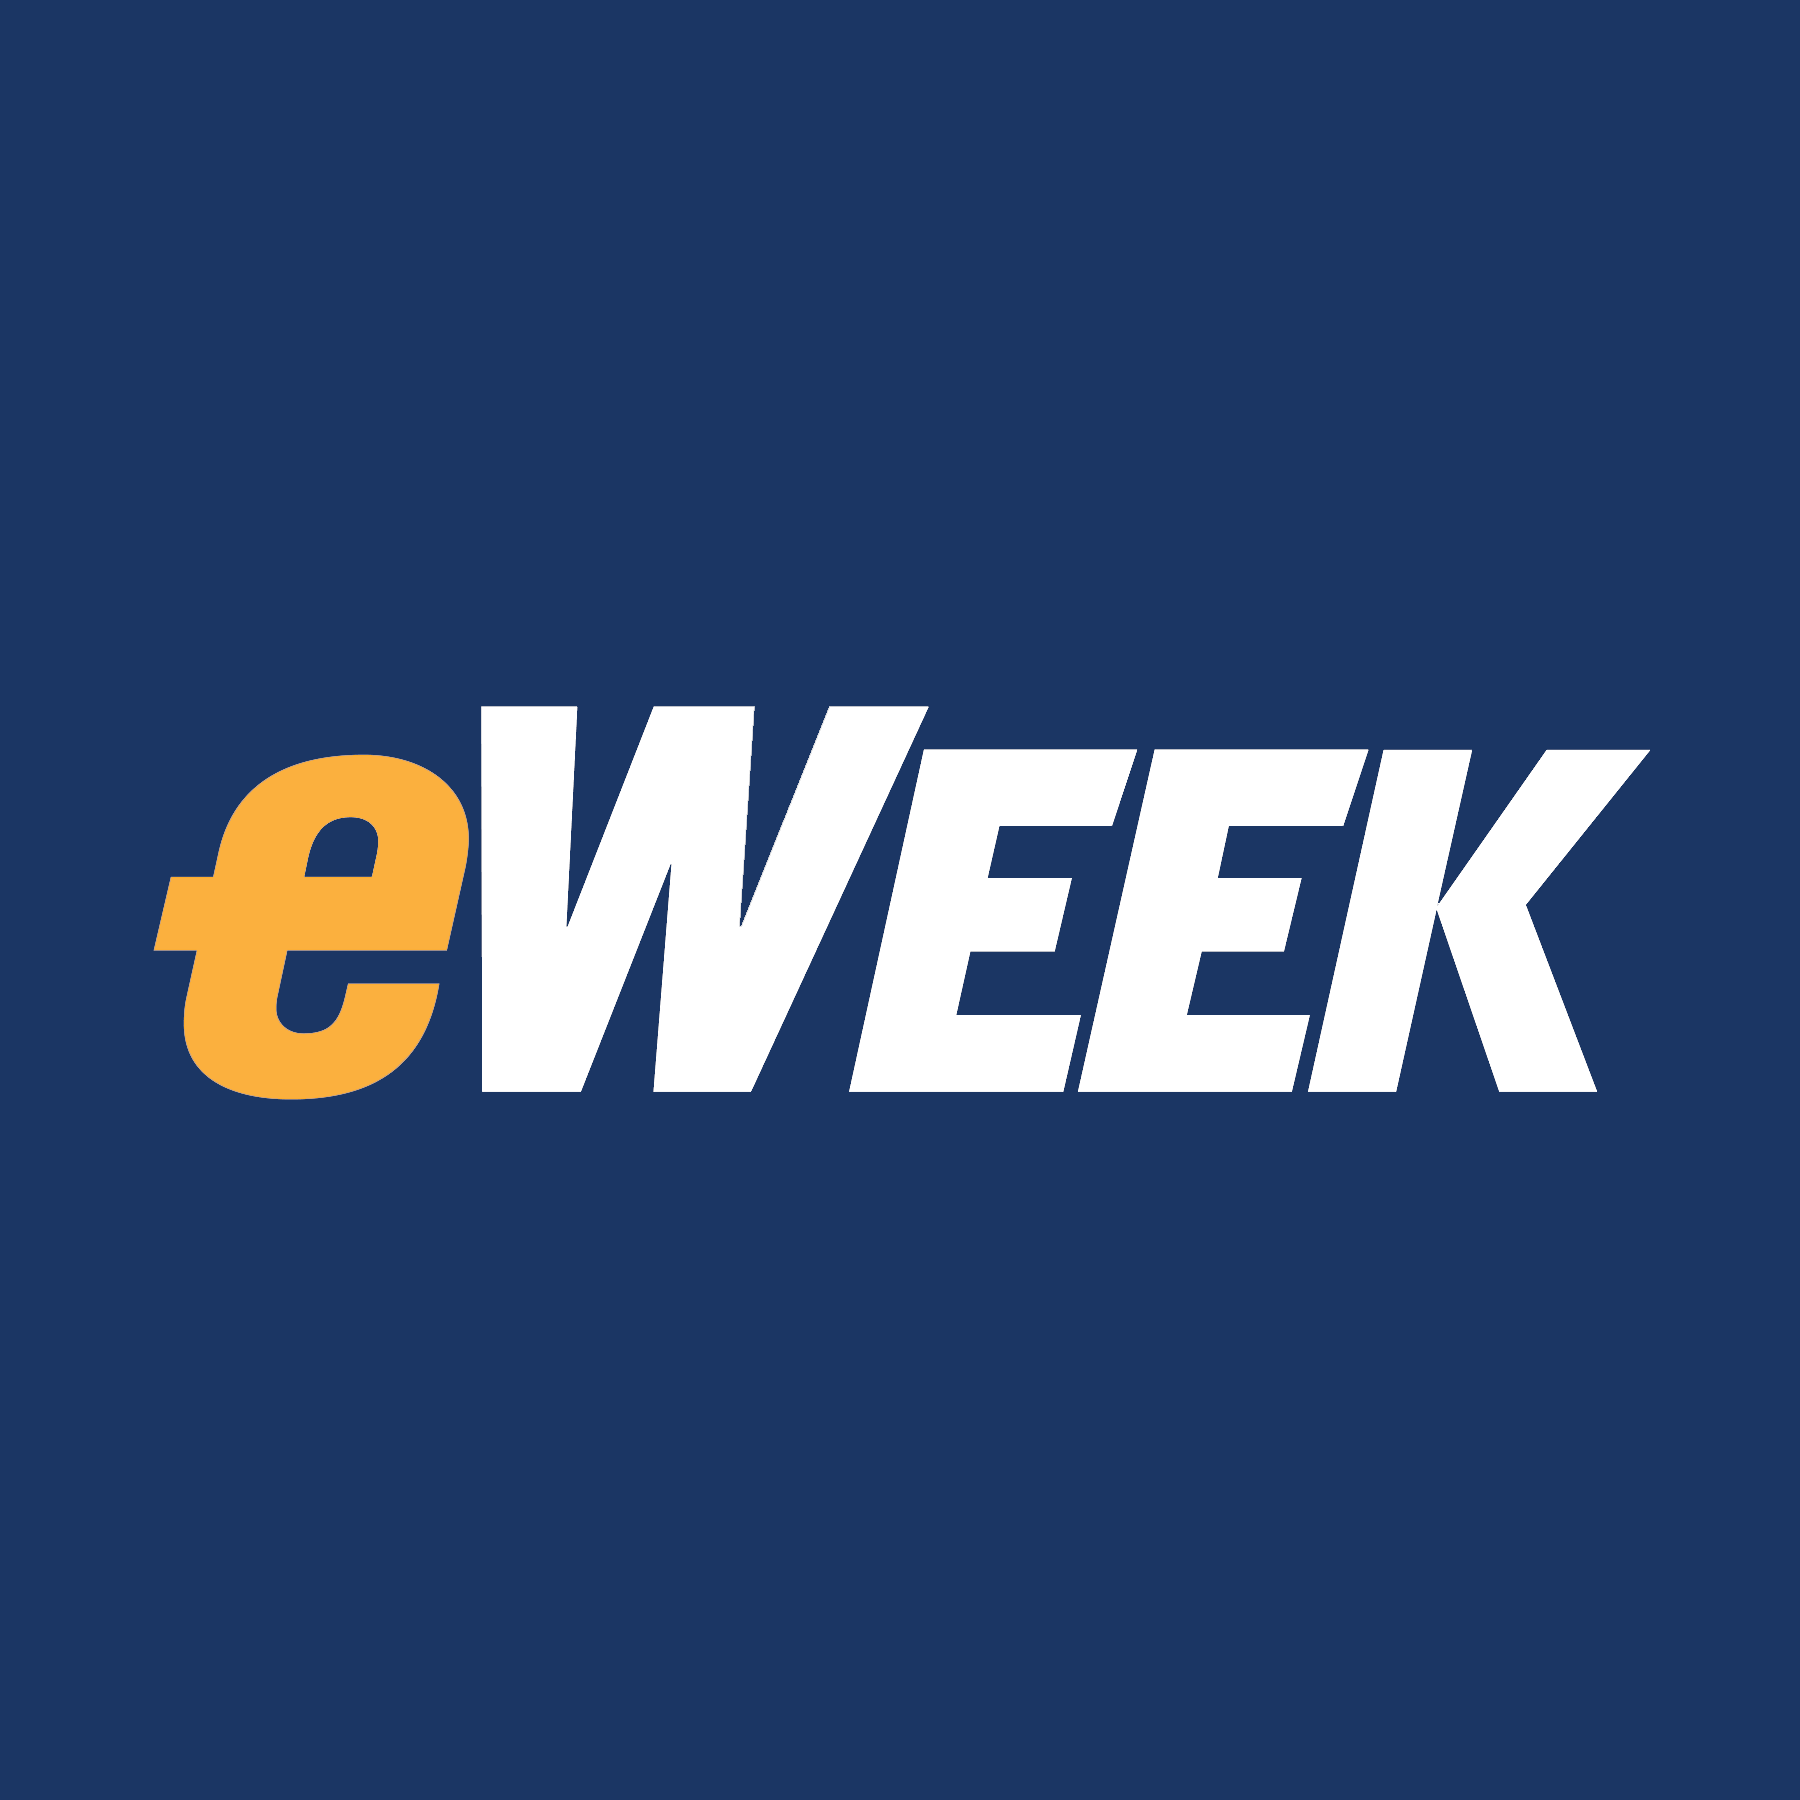 eWeek Logo - eweek logo - Datawatch Corporation